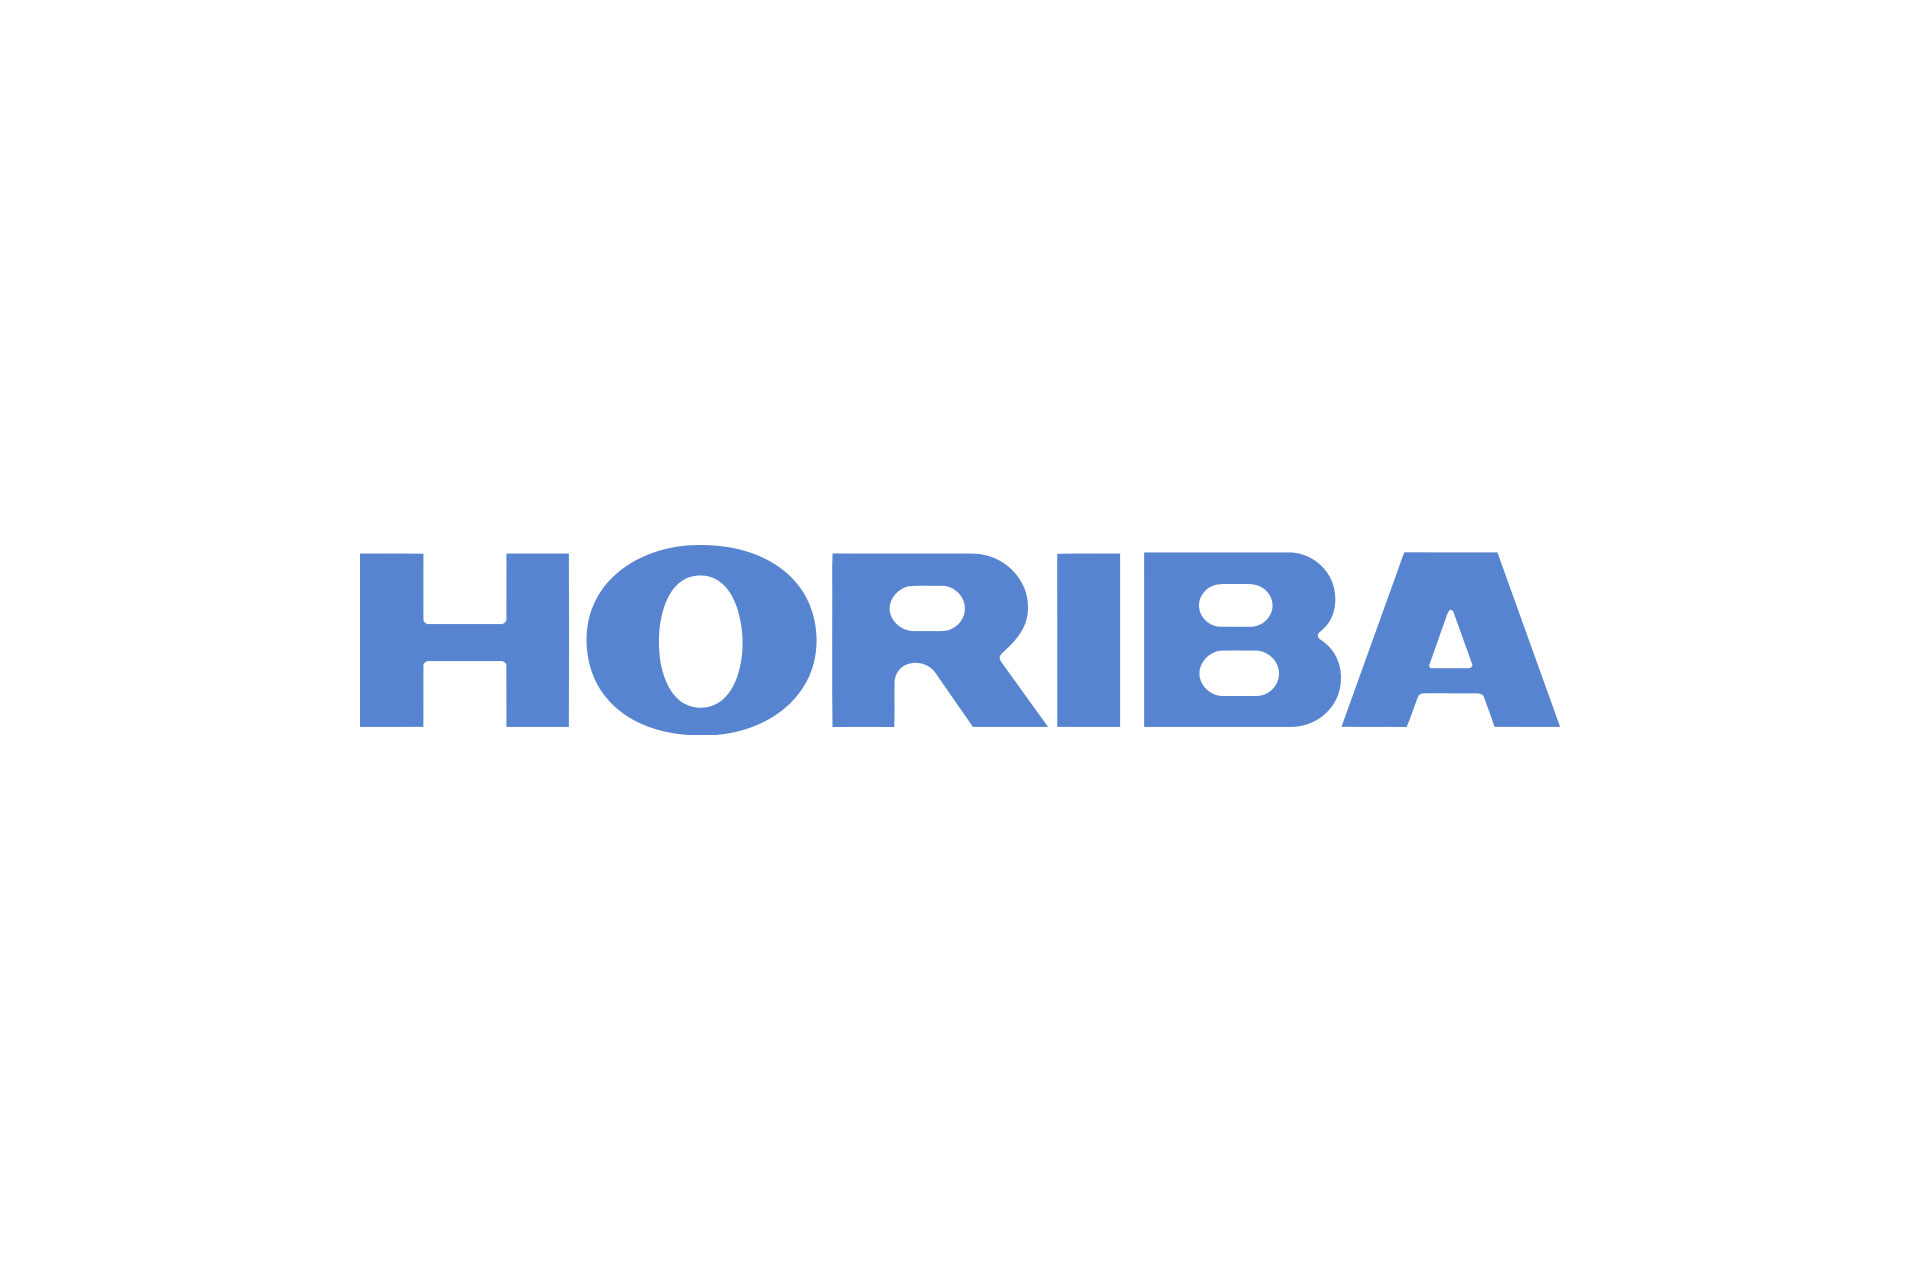 HORIBA company logo